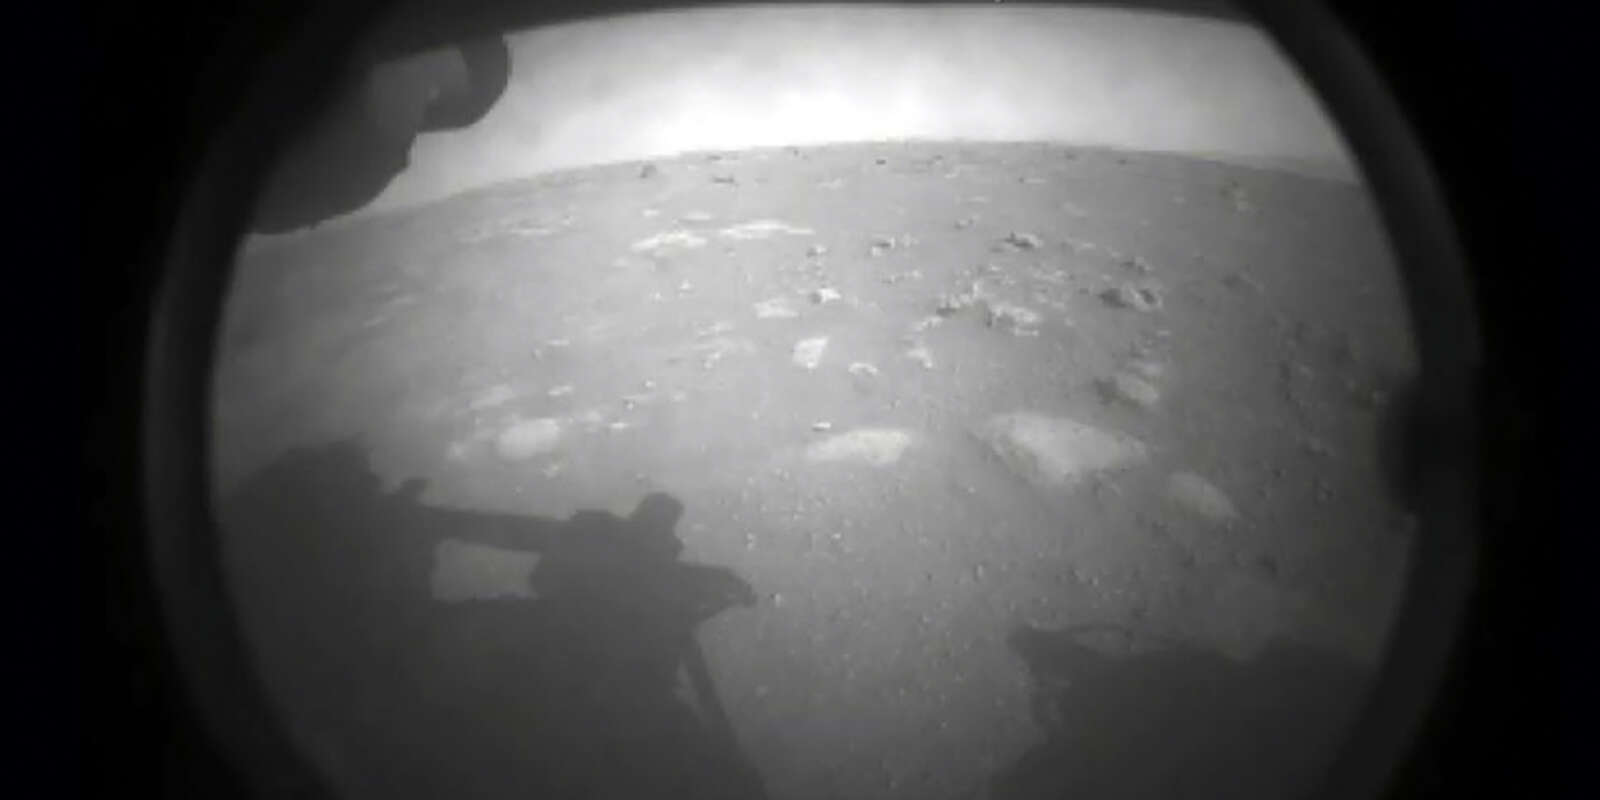 Première photo du sol martien envoyé par le rover Perseverance après son atterrissage, le 18 février 2021, et diffusée par la NASA.